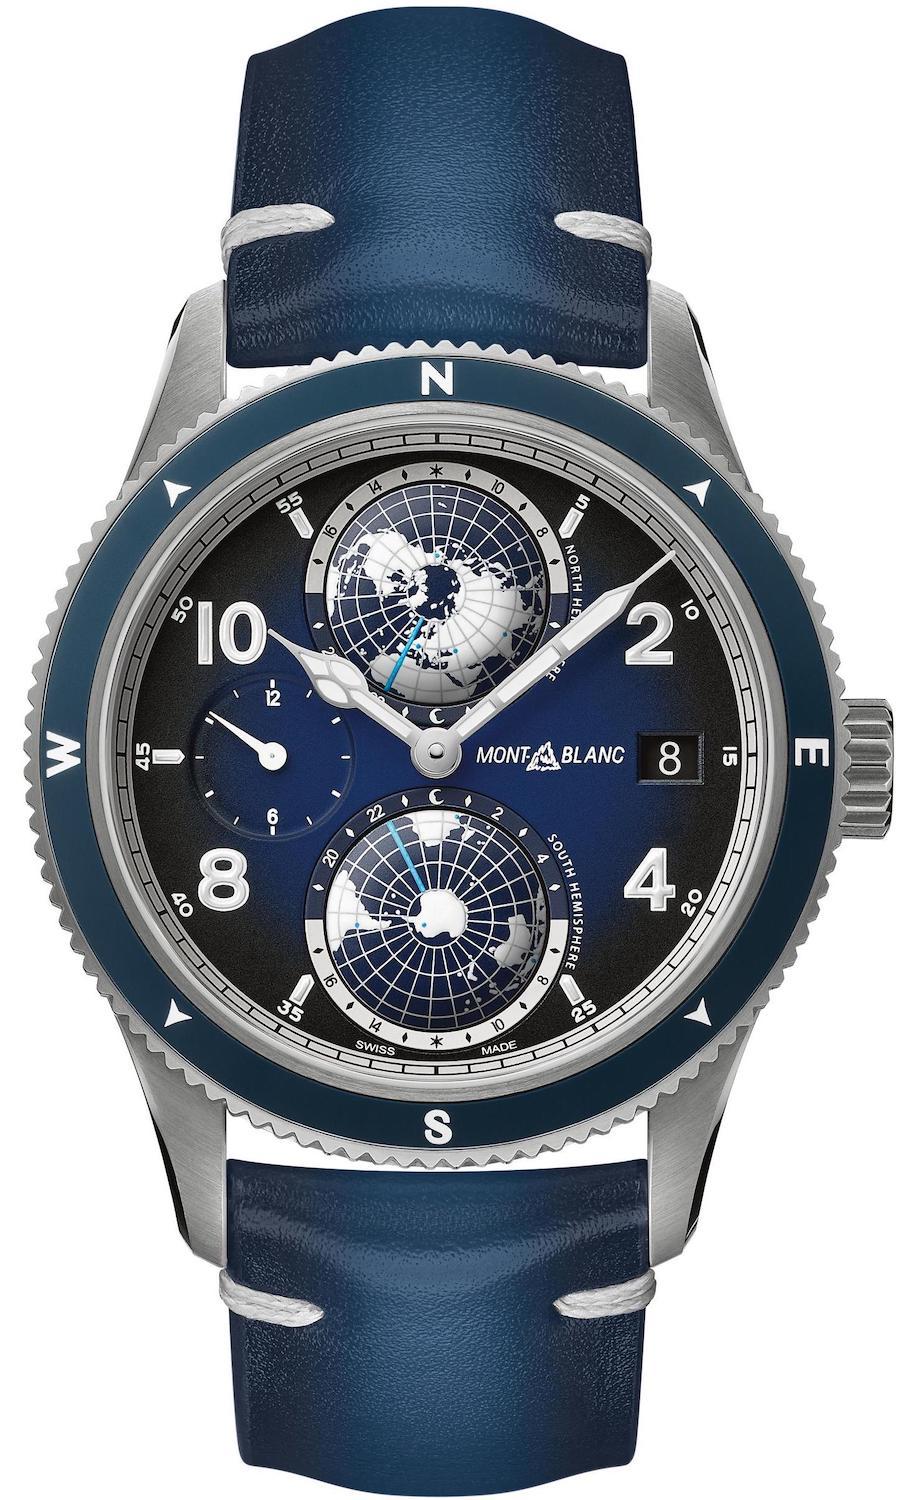 Photos - Wrist Watch Mont Blanc Montblanc Watch 1858 Geosphere - Blue MNTB-019 